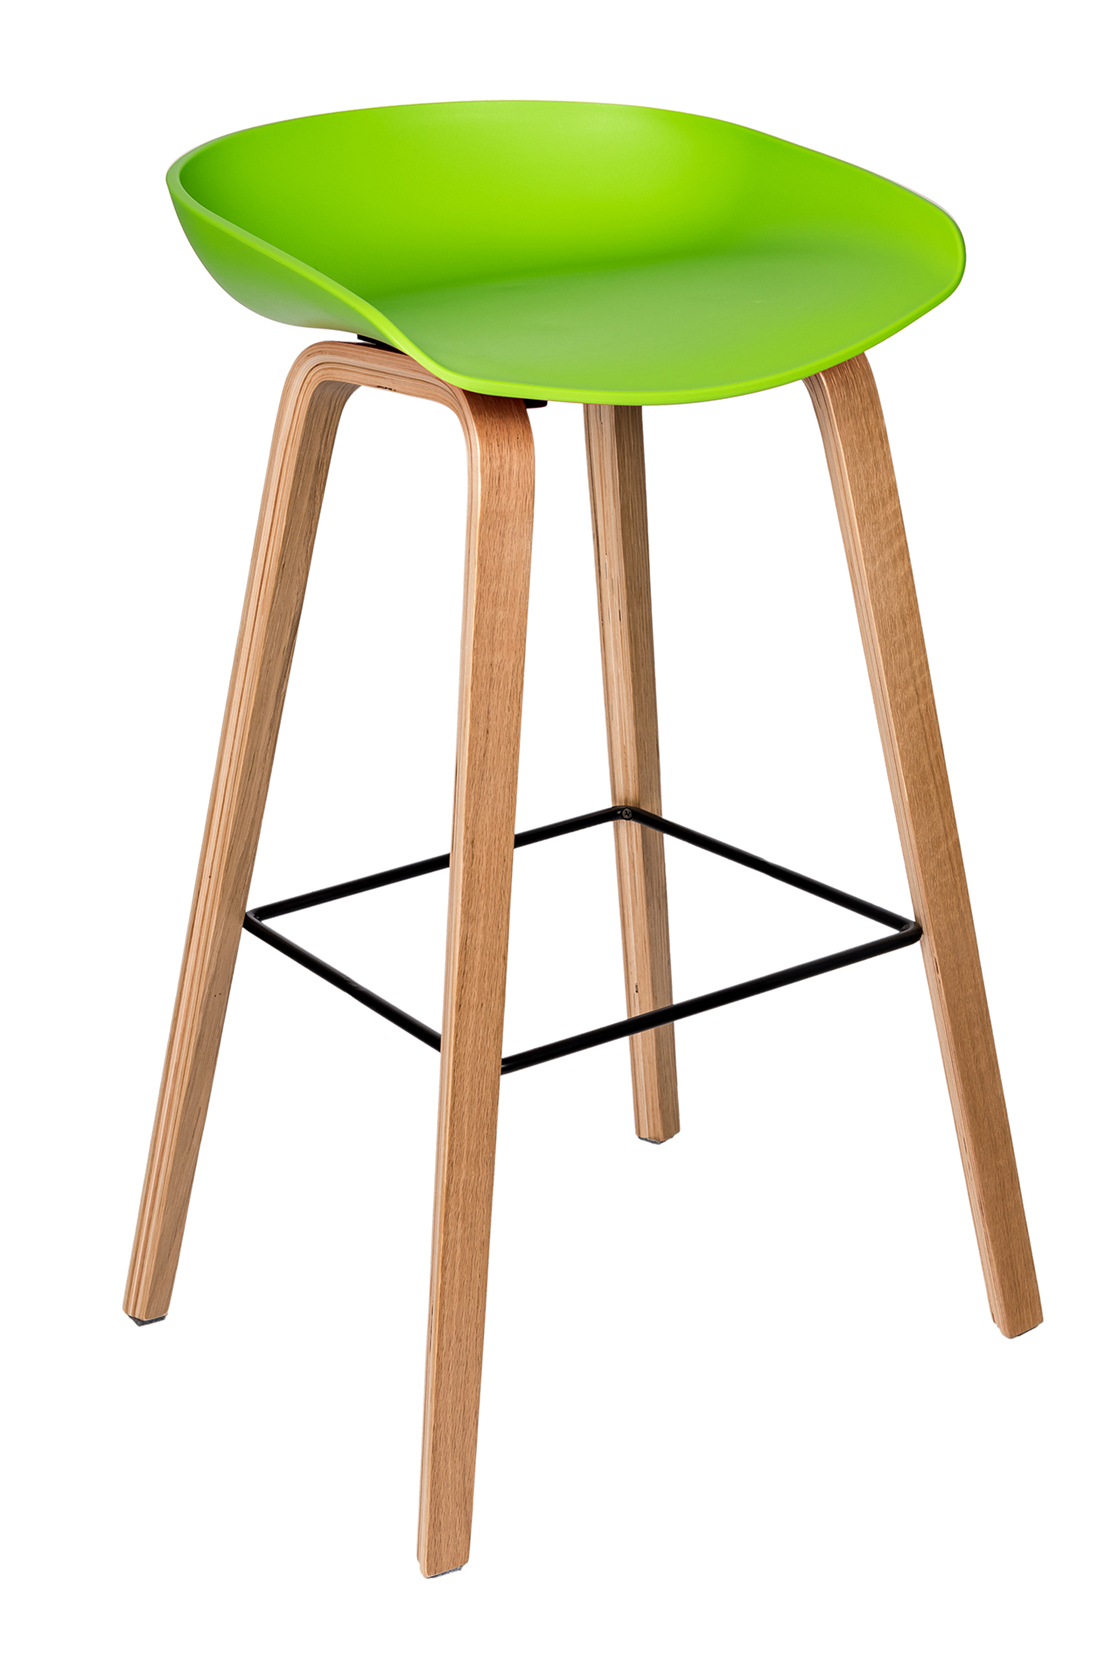 Пластиковый барный стул Либра Зеленый  Тамбов